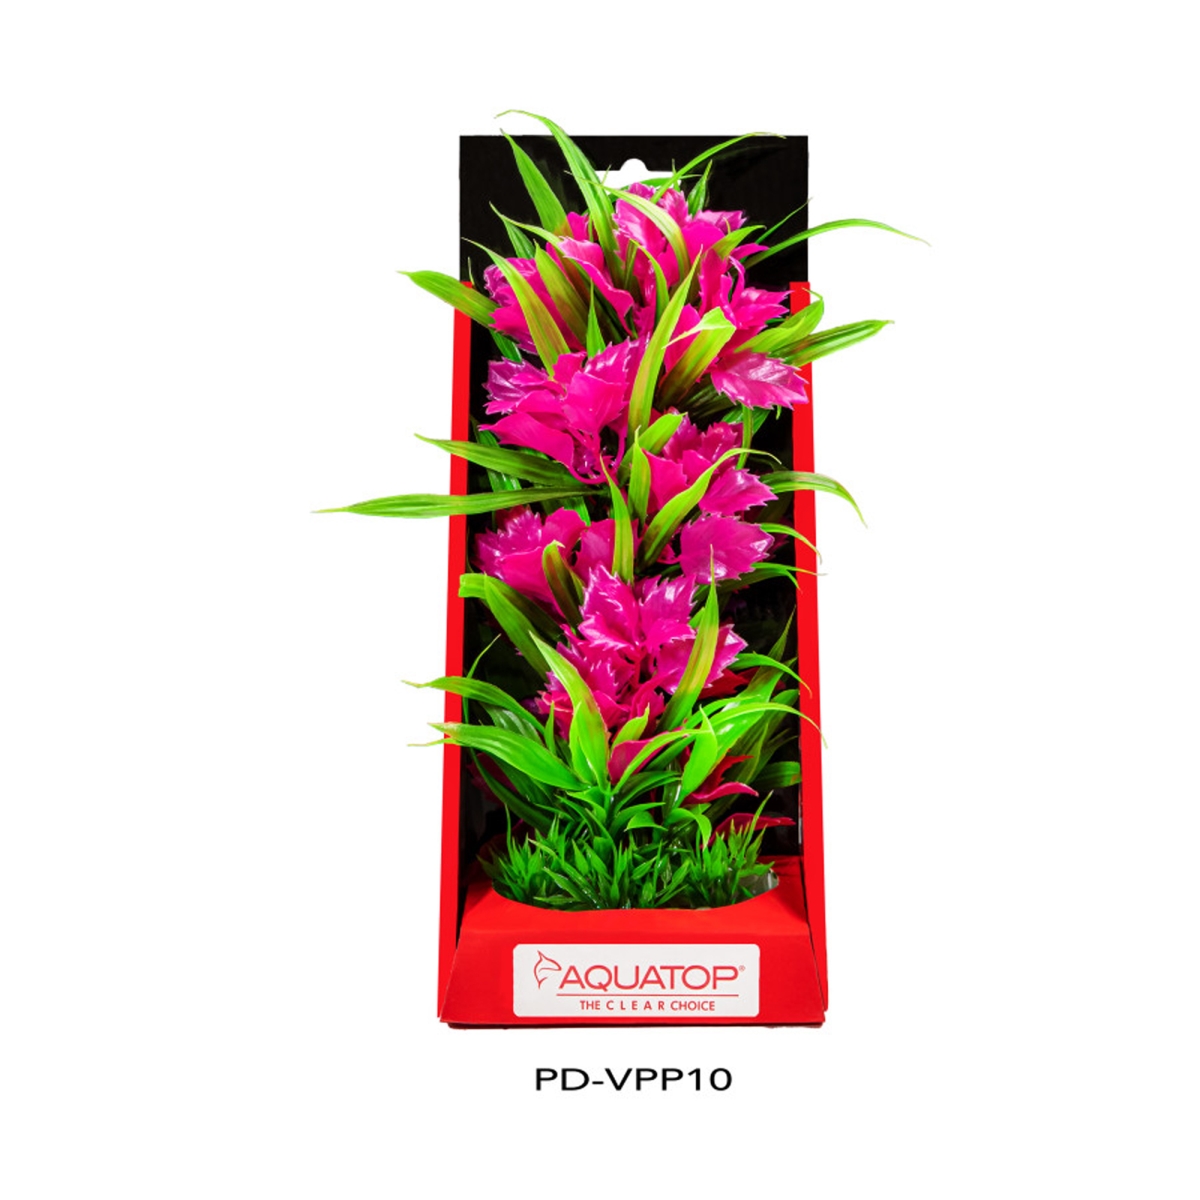 Picture of Aquatop 810074880169 Vibrant Aquarium Passion Plant - Pink - 10 in.